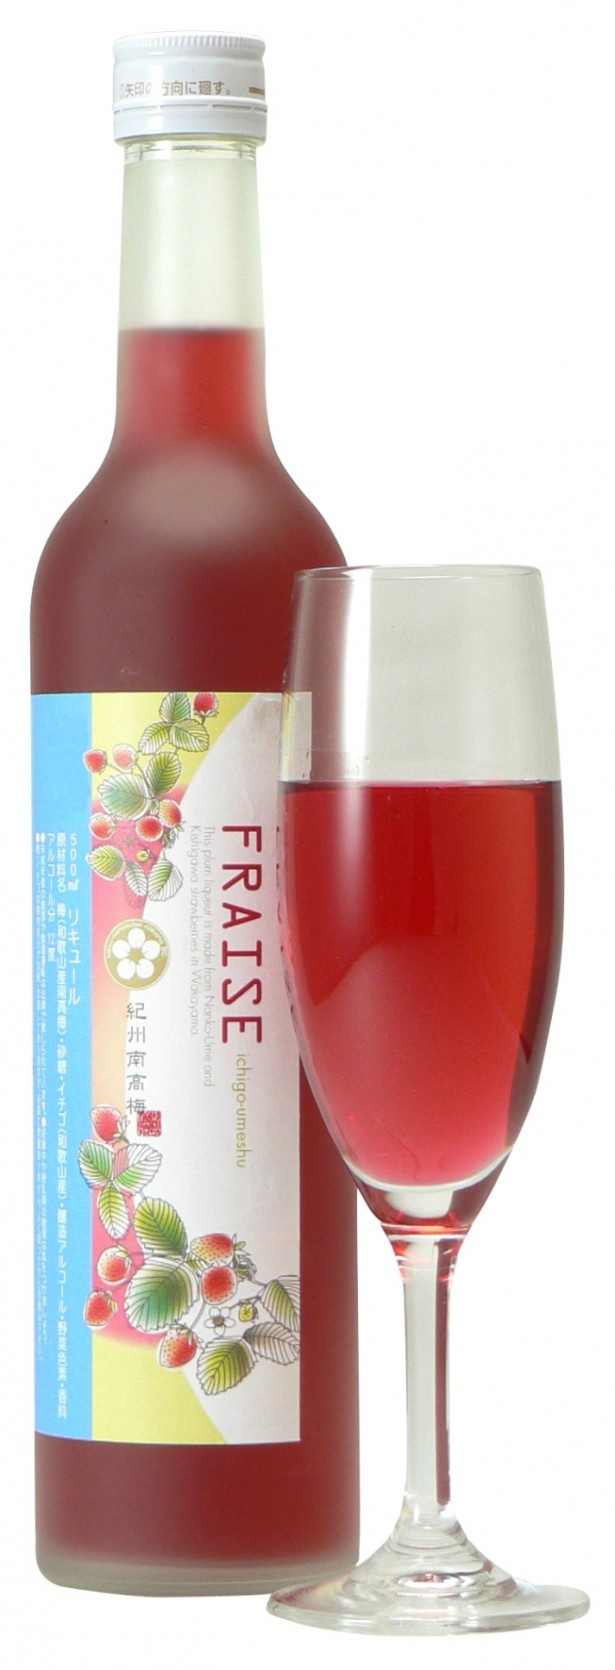 「FRAISE」(1543円/500ml)は、甘酸っぱいイチゴの果肉がたっぷり！